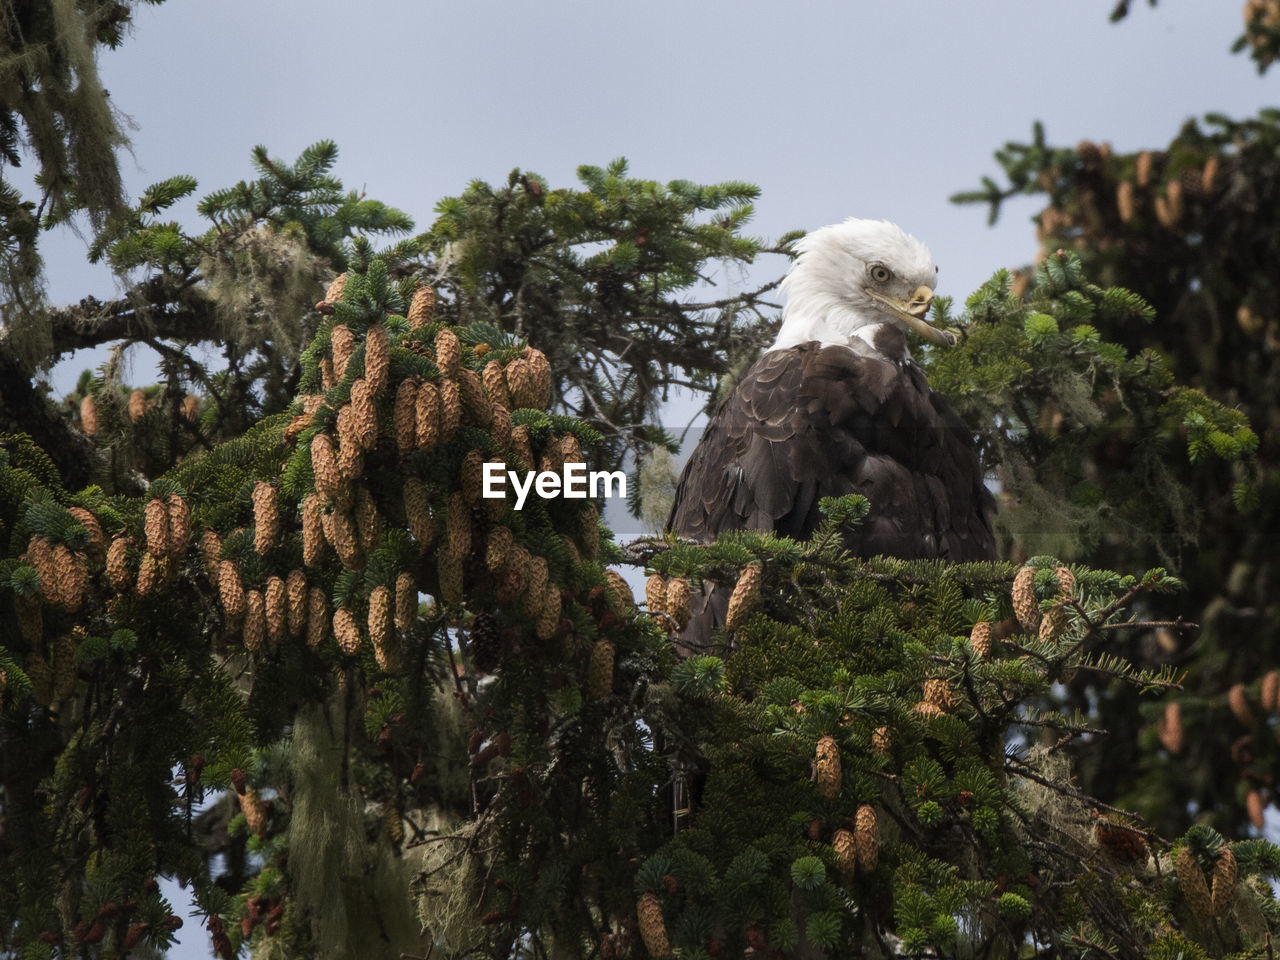 Bald eagle with damaged beak perching on tree